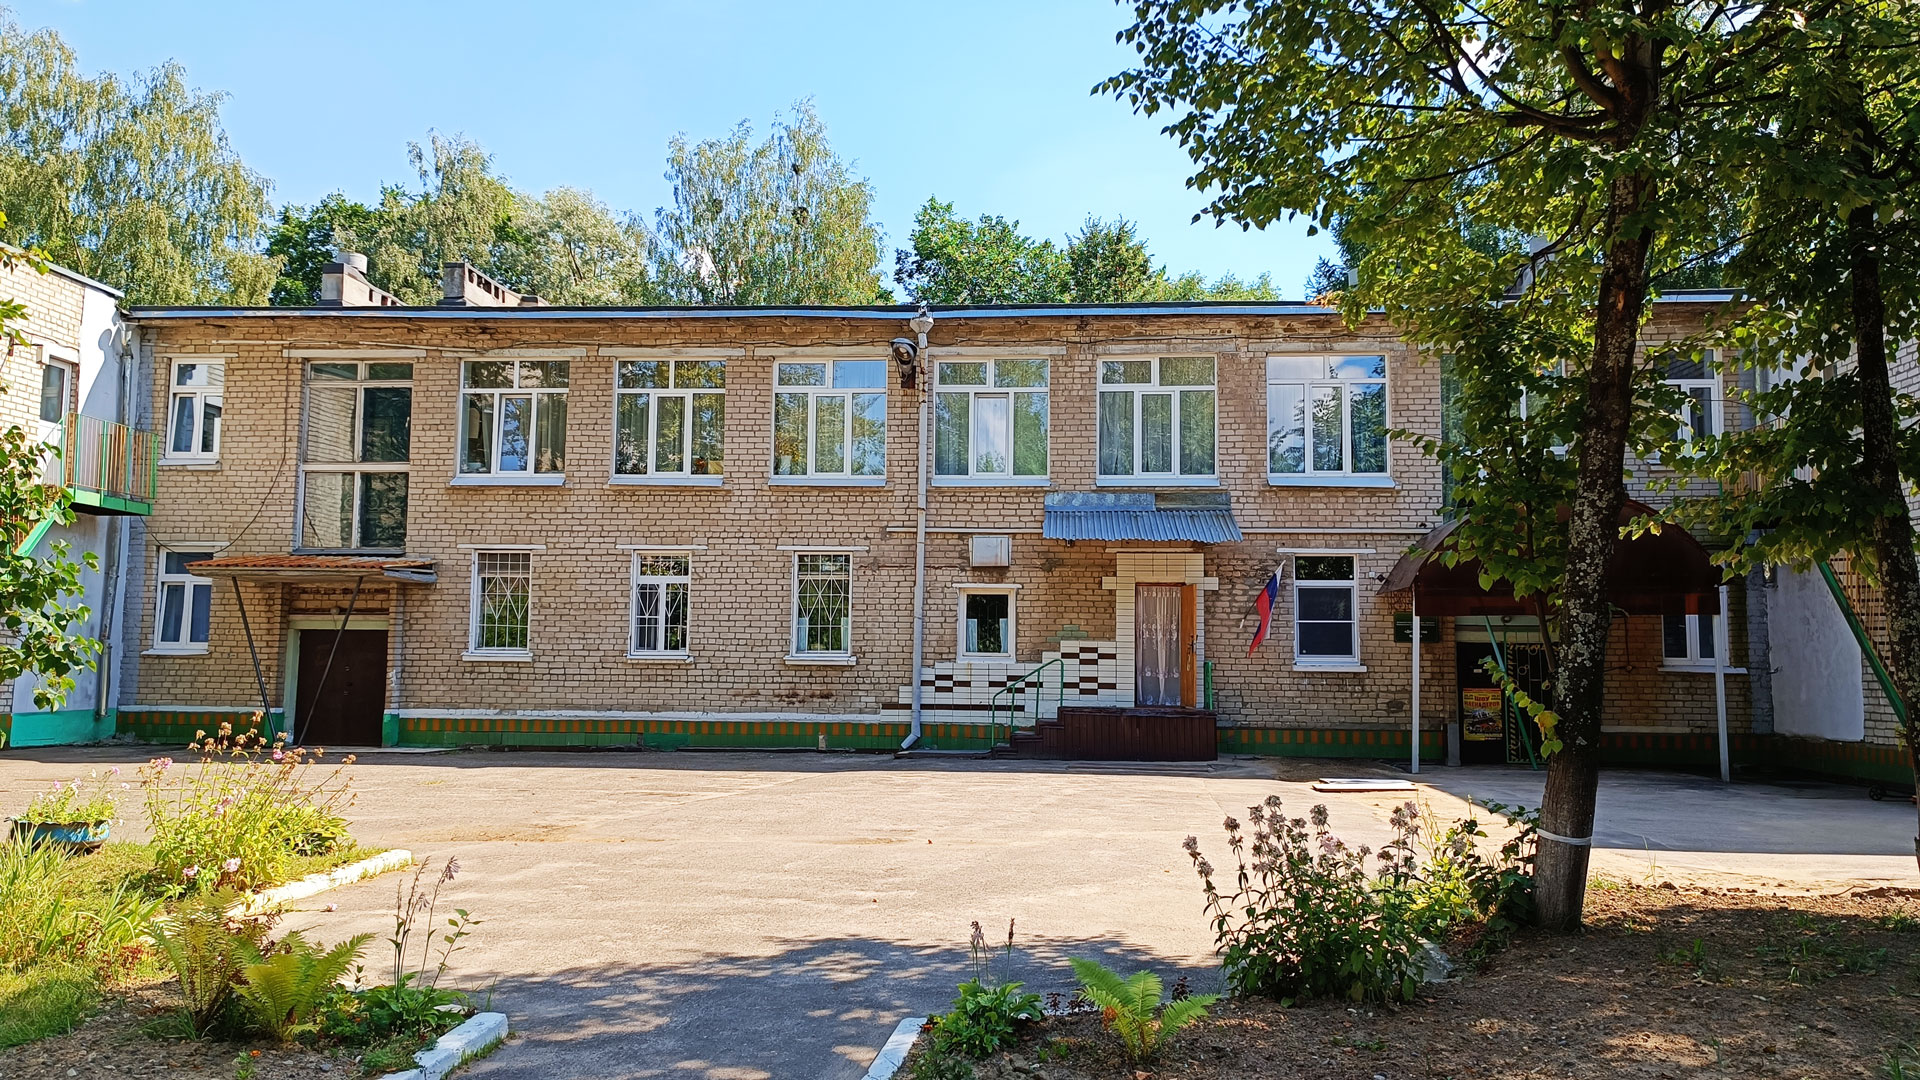 Детский сад 229 Ярославль: общий вид здания.